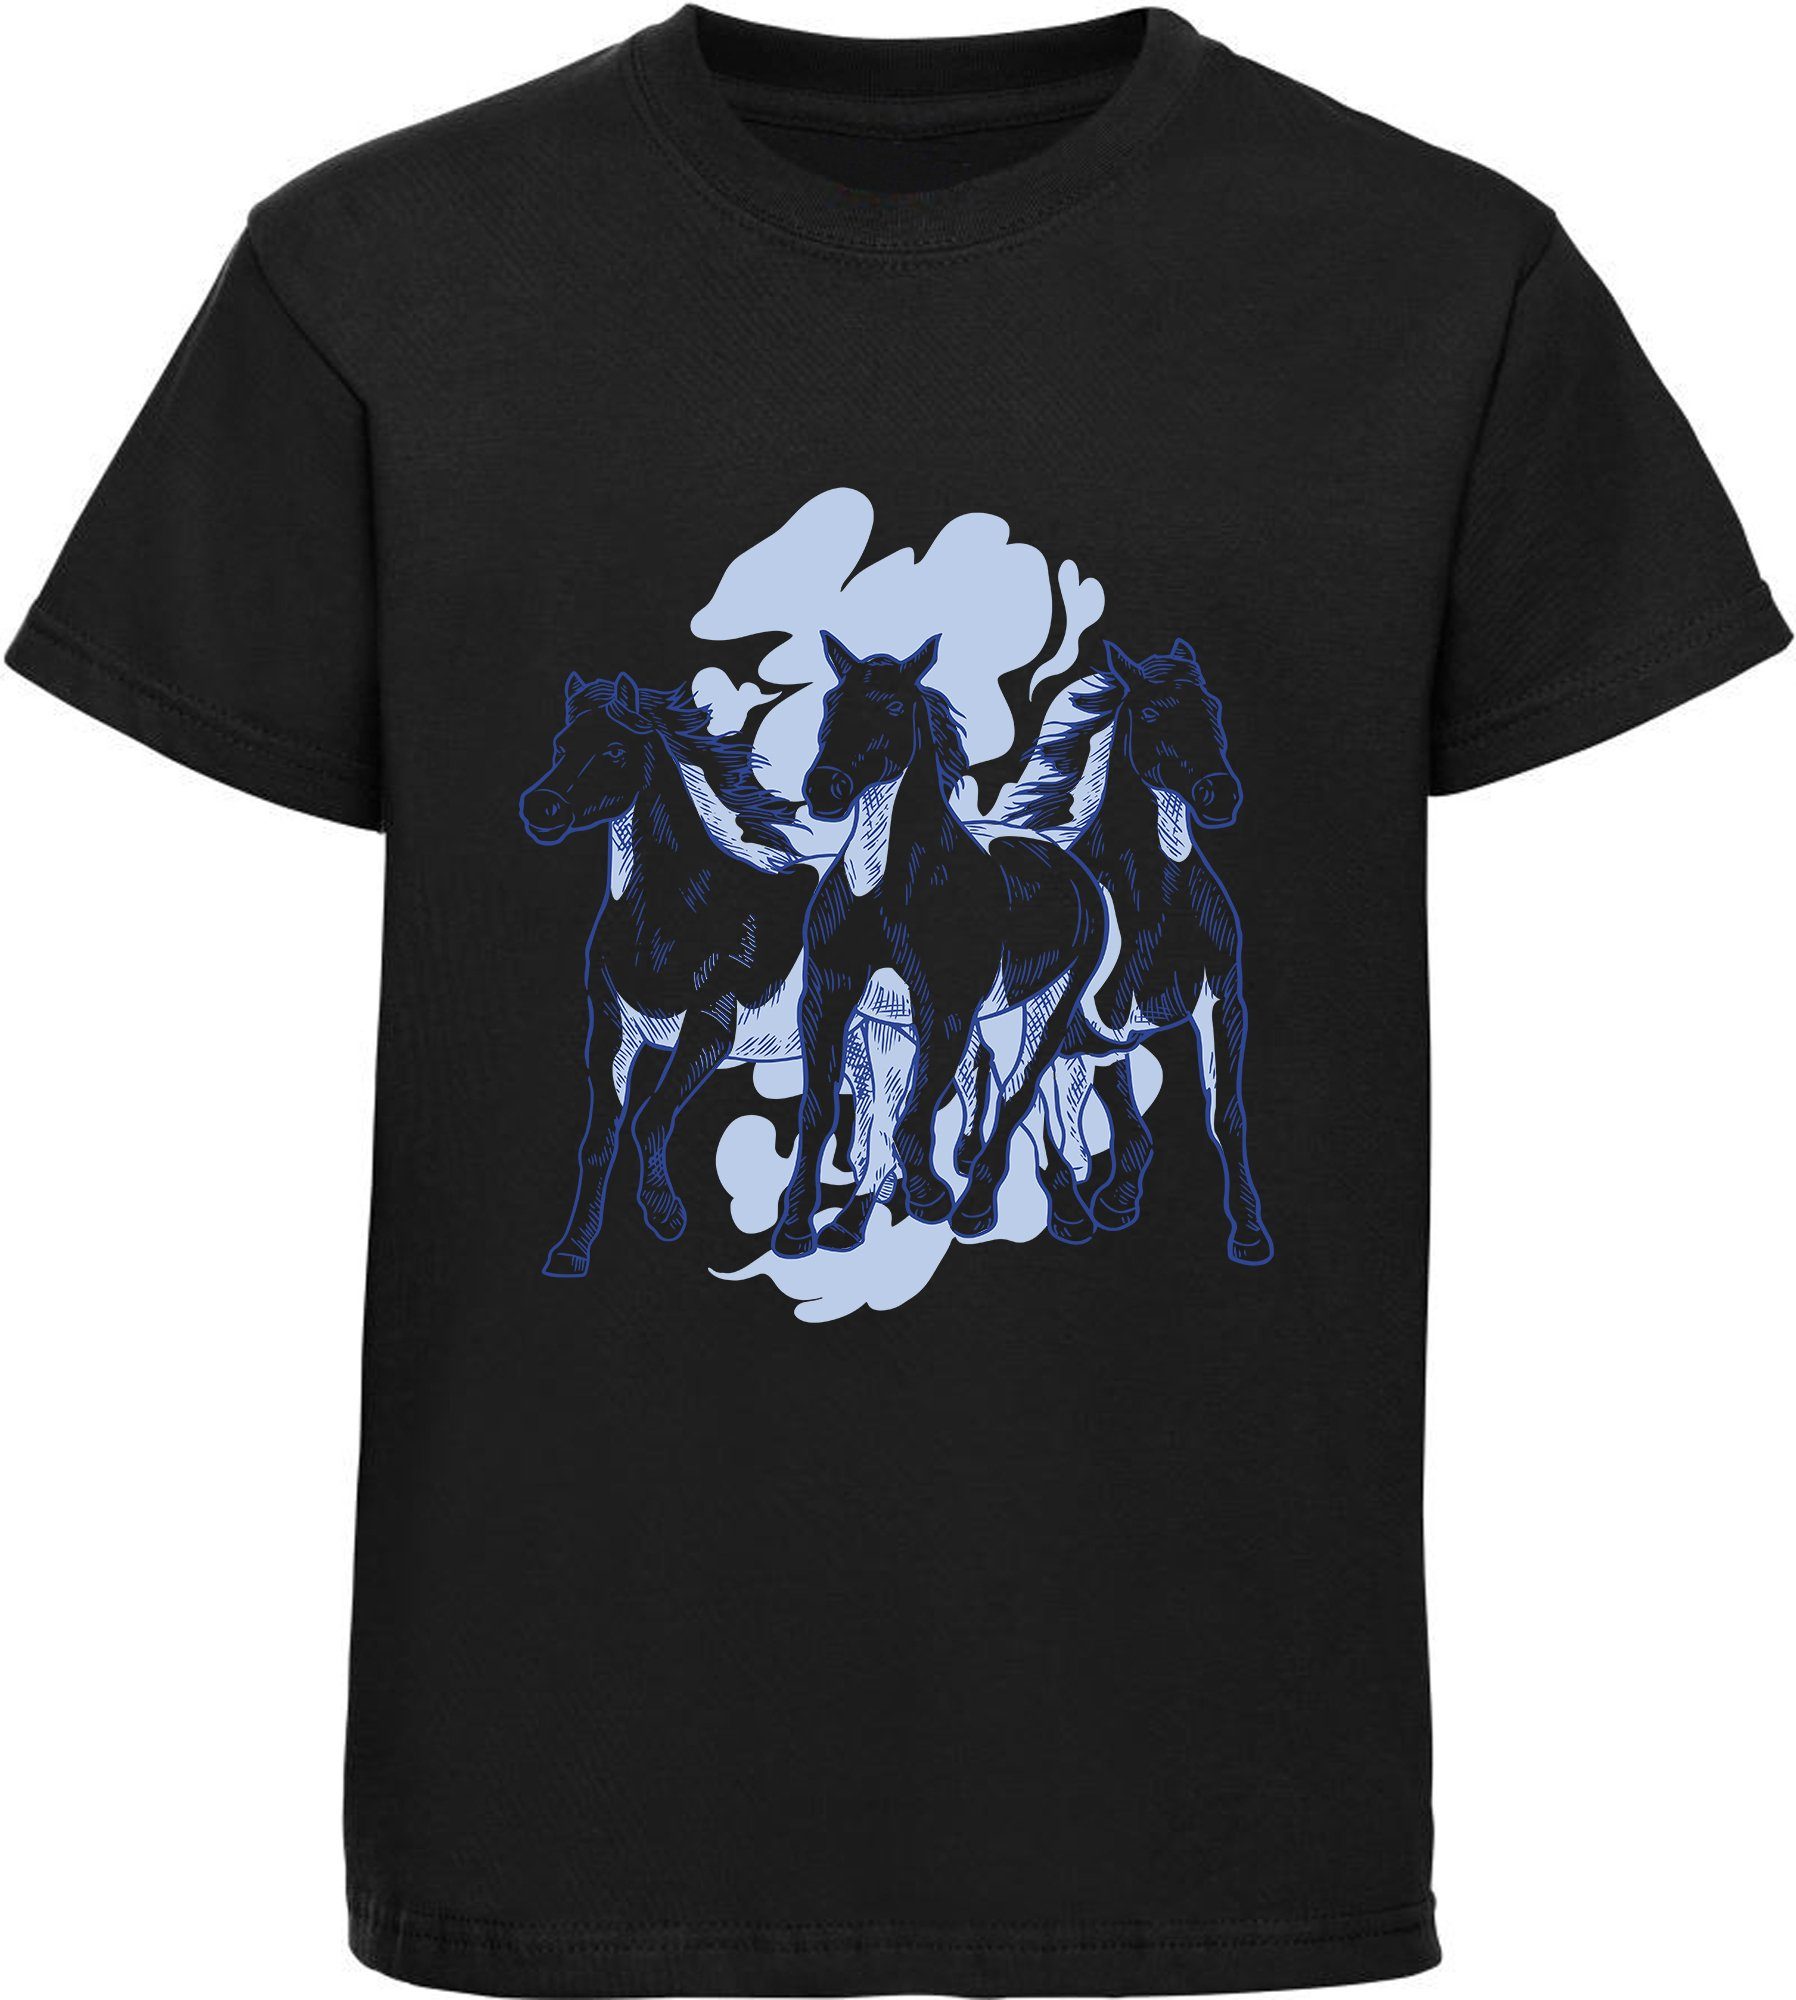 MyDesign24 Print-Shirt bedrucktes Mädchen T-Shirt mit 3 Pferden Baumwollshirt mit Aufdruck, i141 schwarz